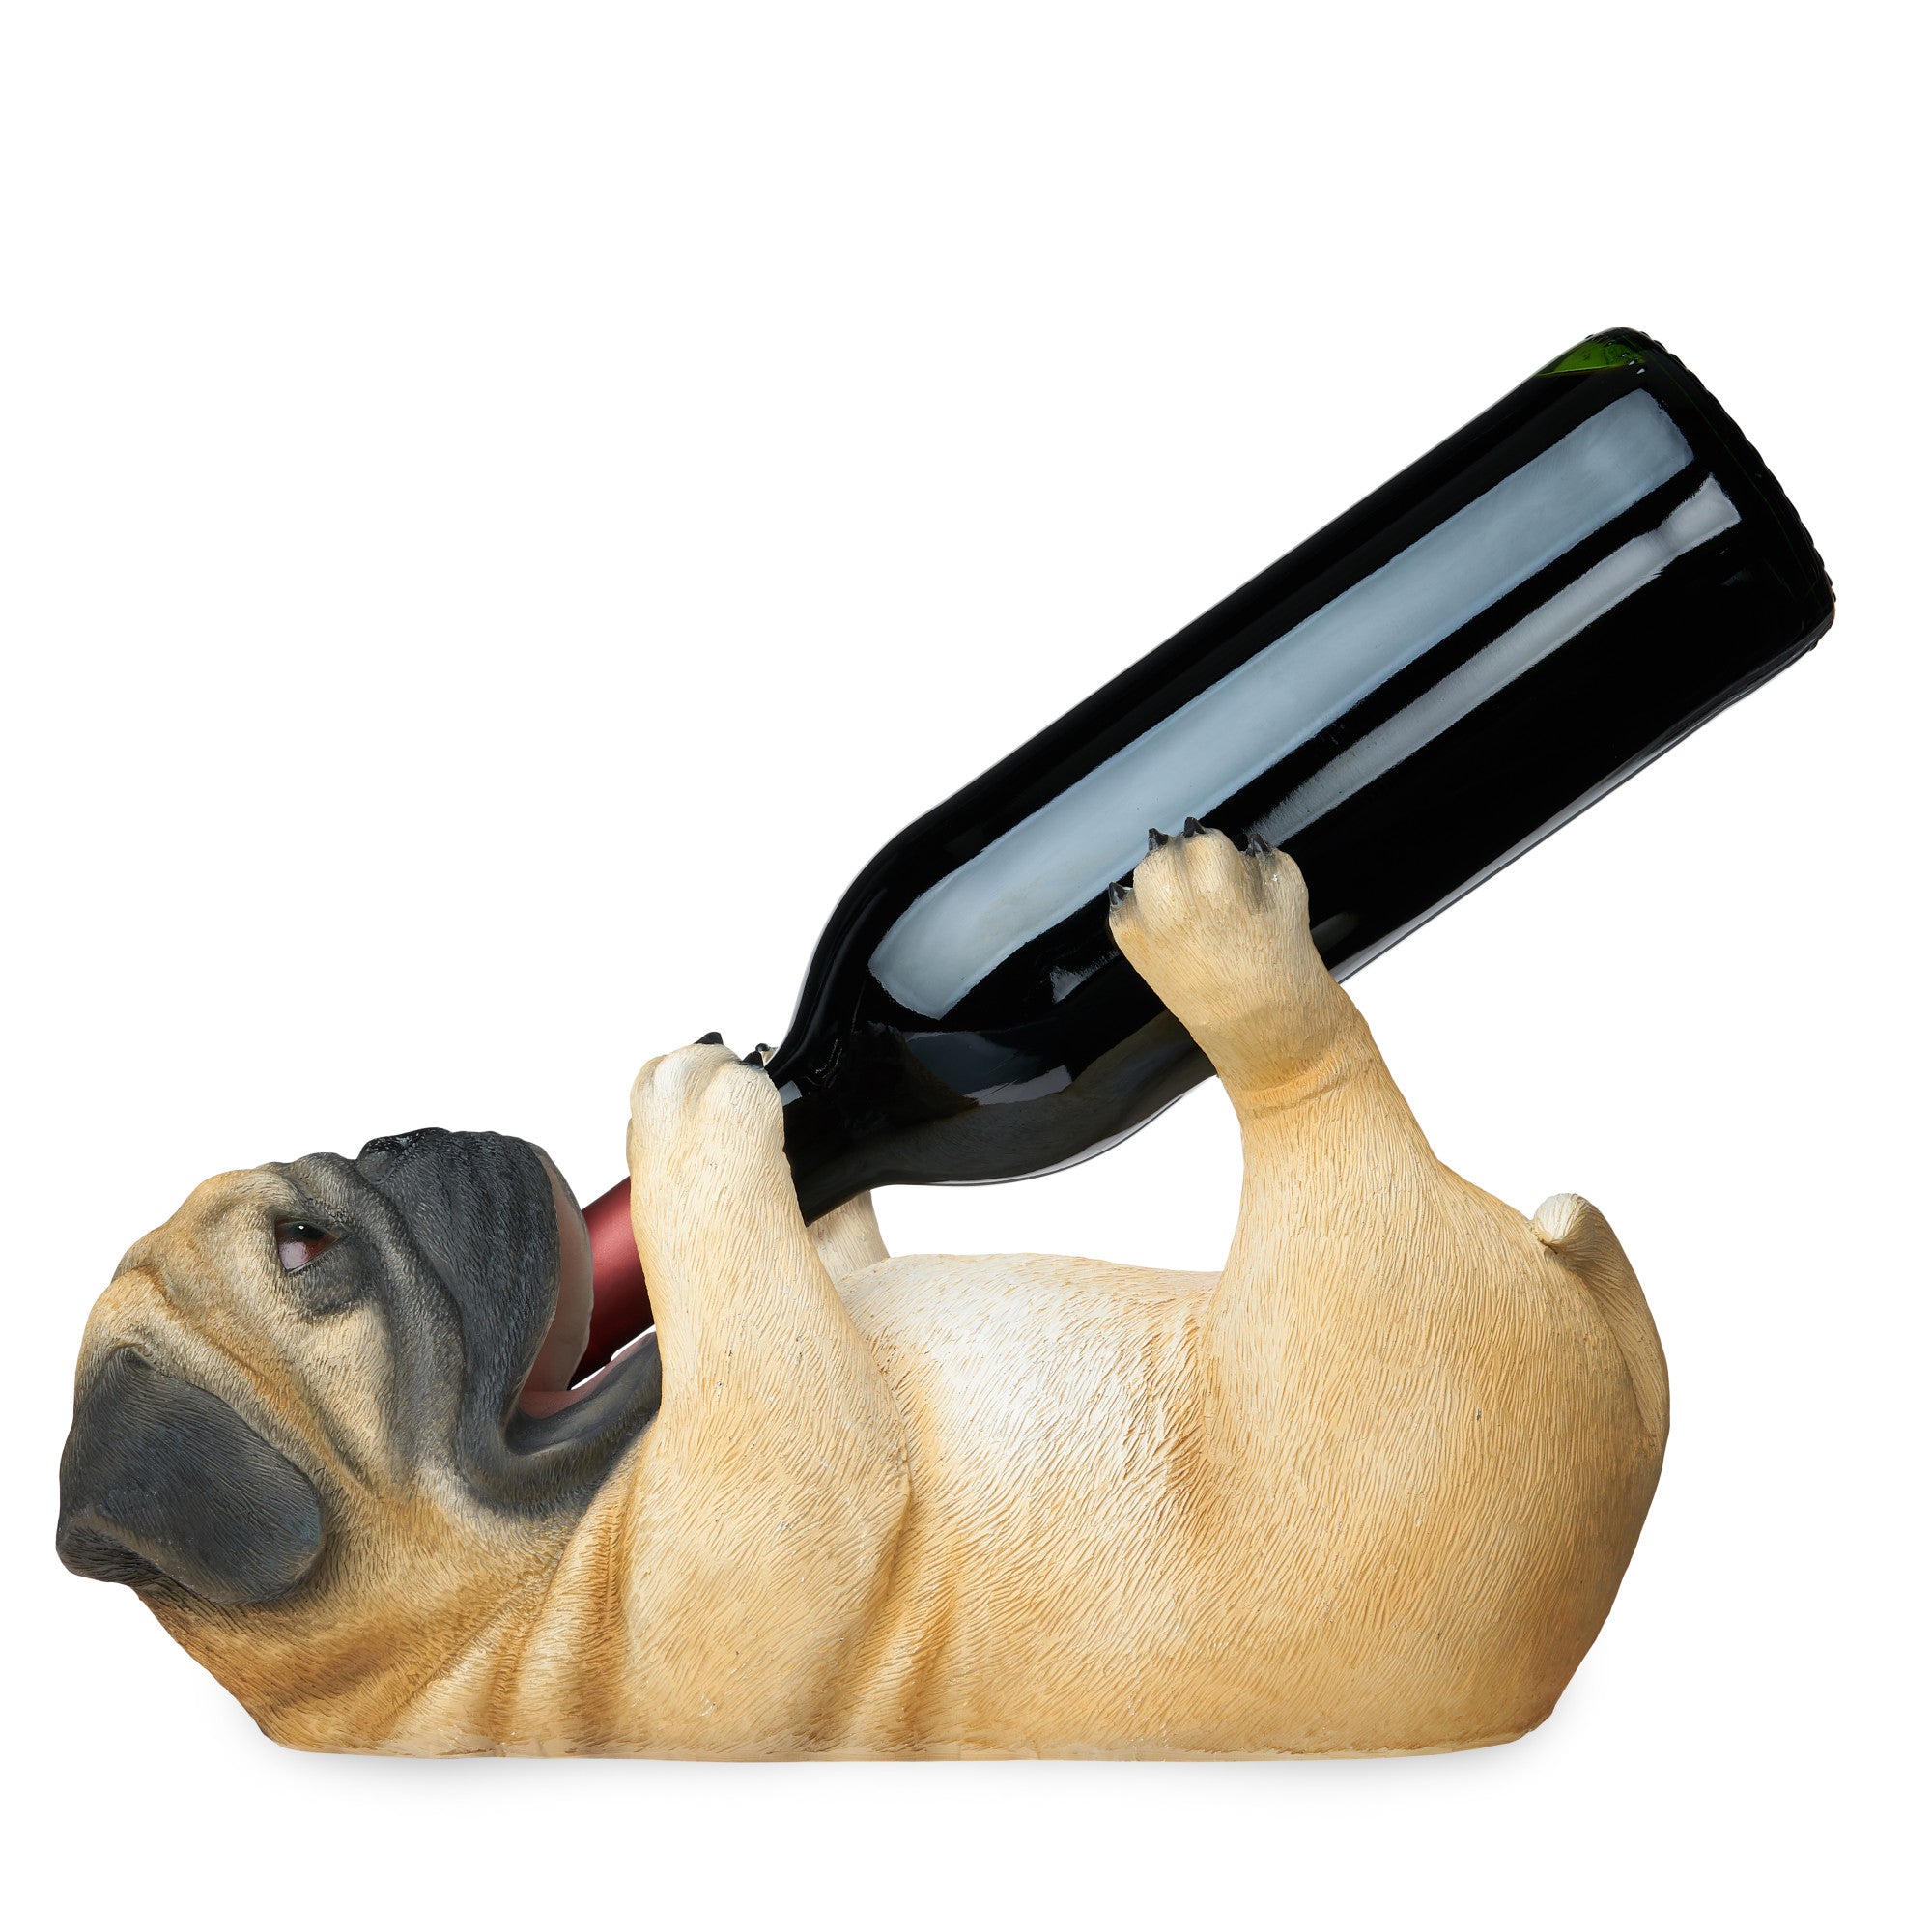 Pug Wine Bottle Holder by True (5431) Wine Accessories True